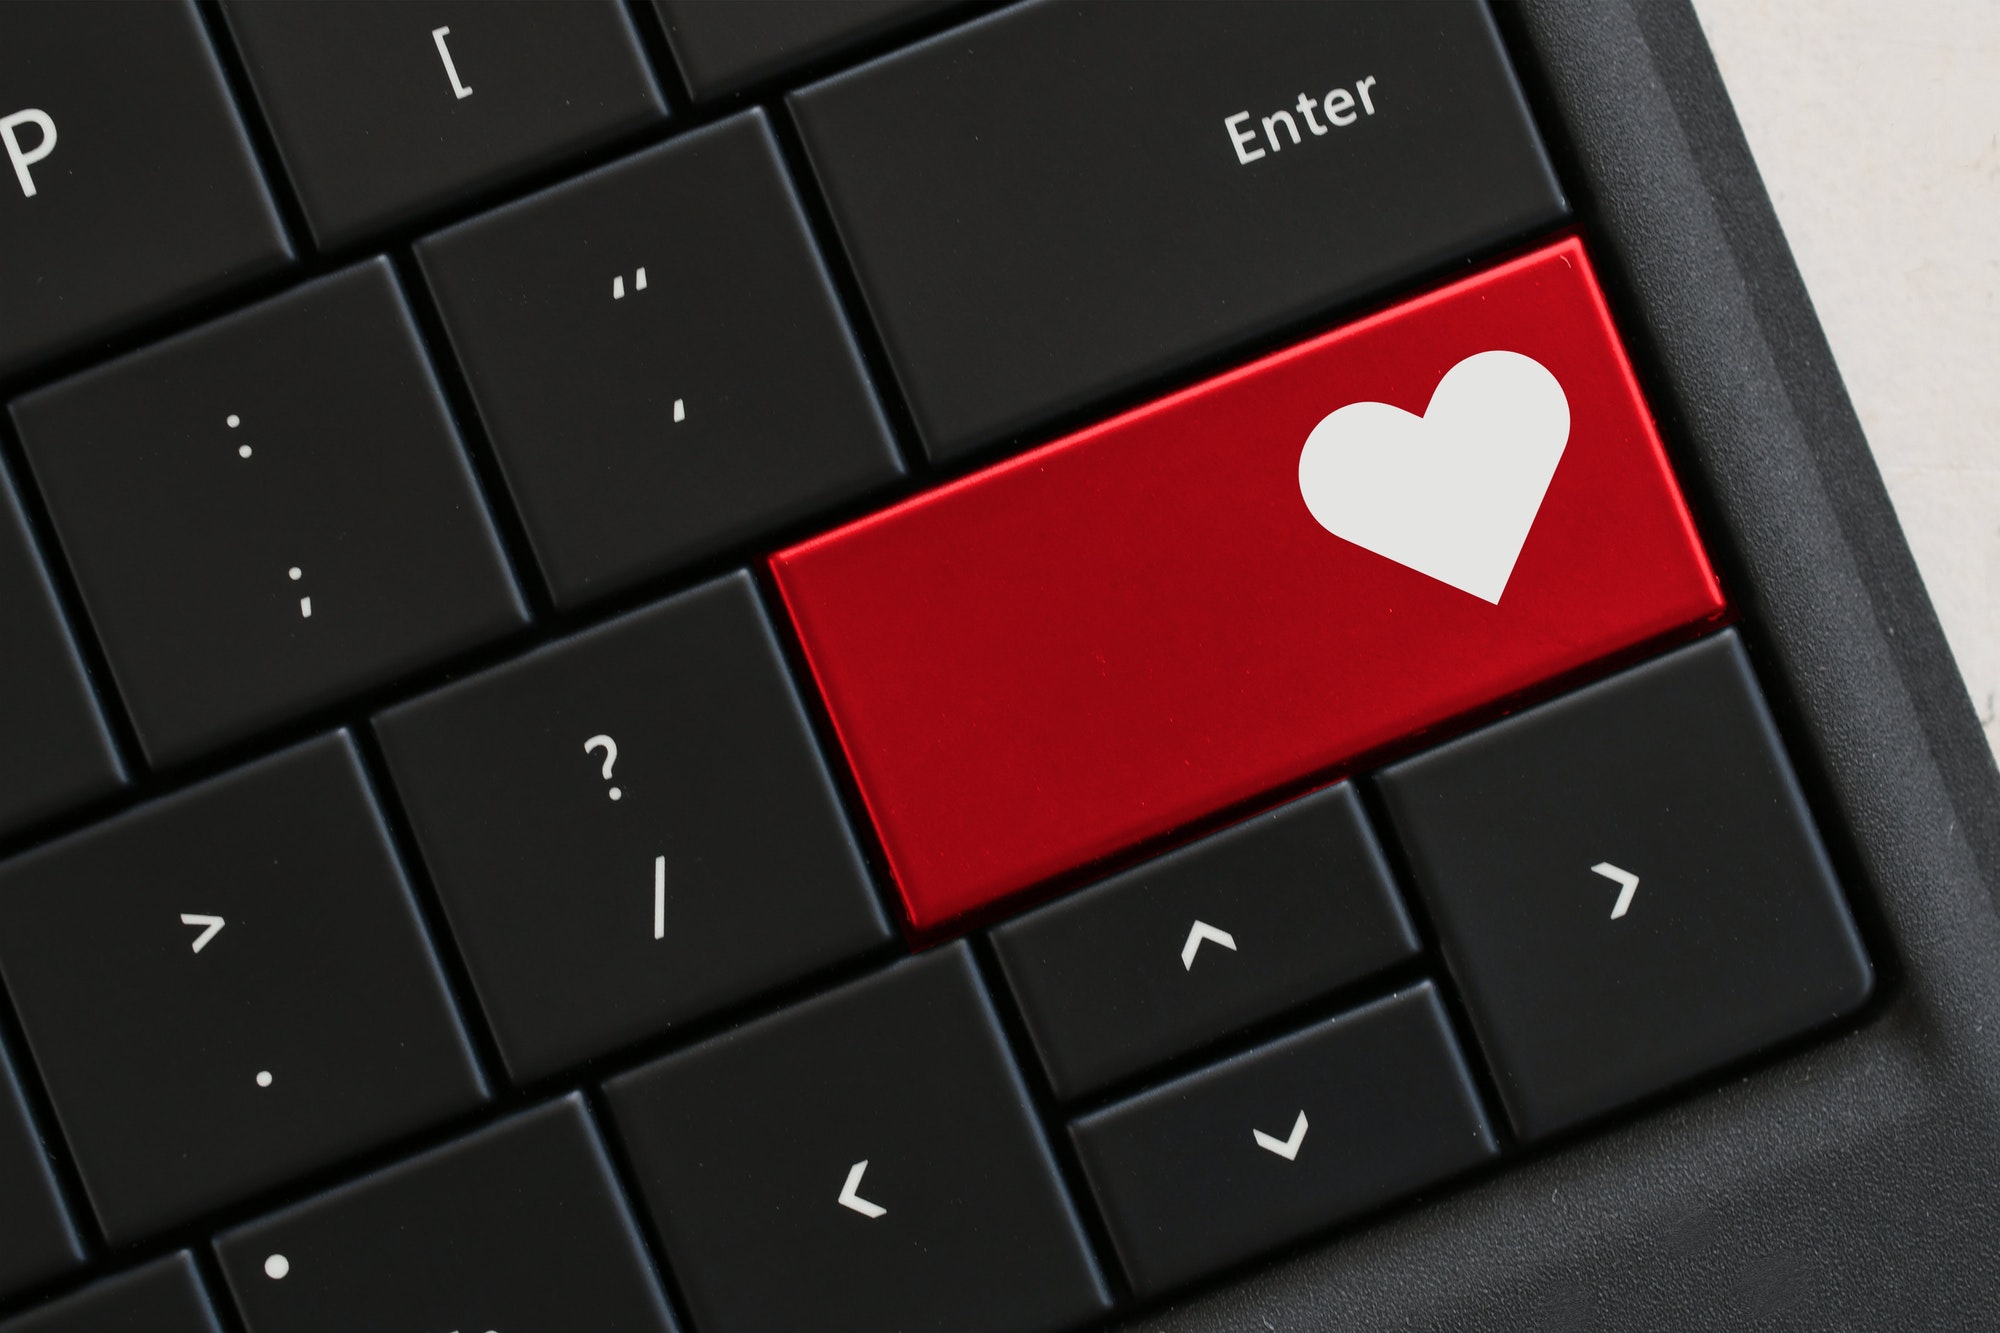 Saint-valentin : Comment éviter les pièges et arnaques sur les sites de rencontres en ligne ?